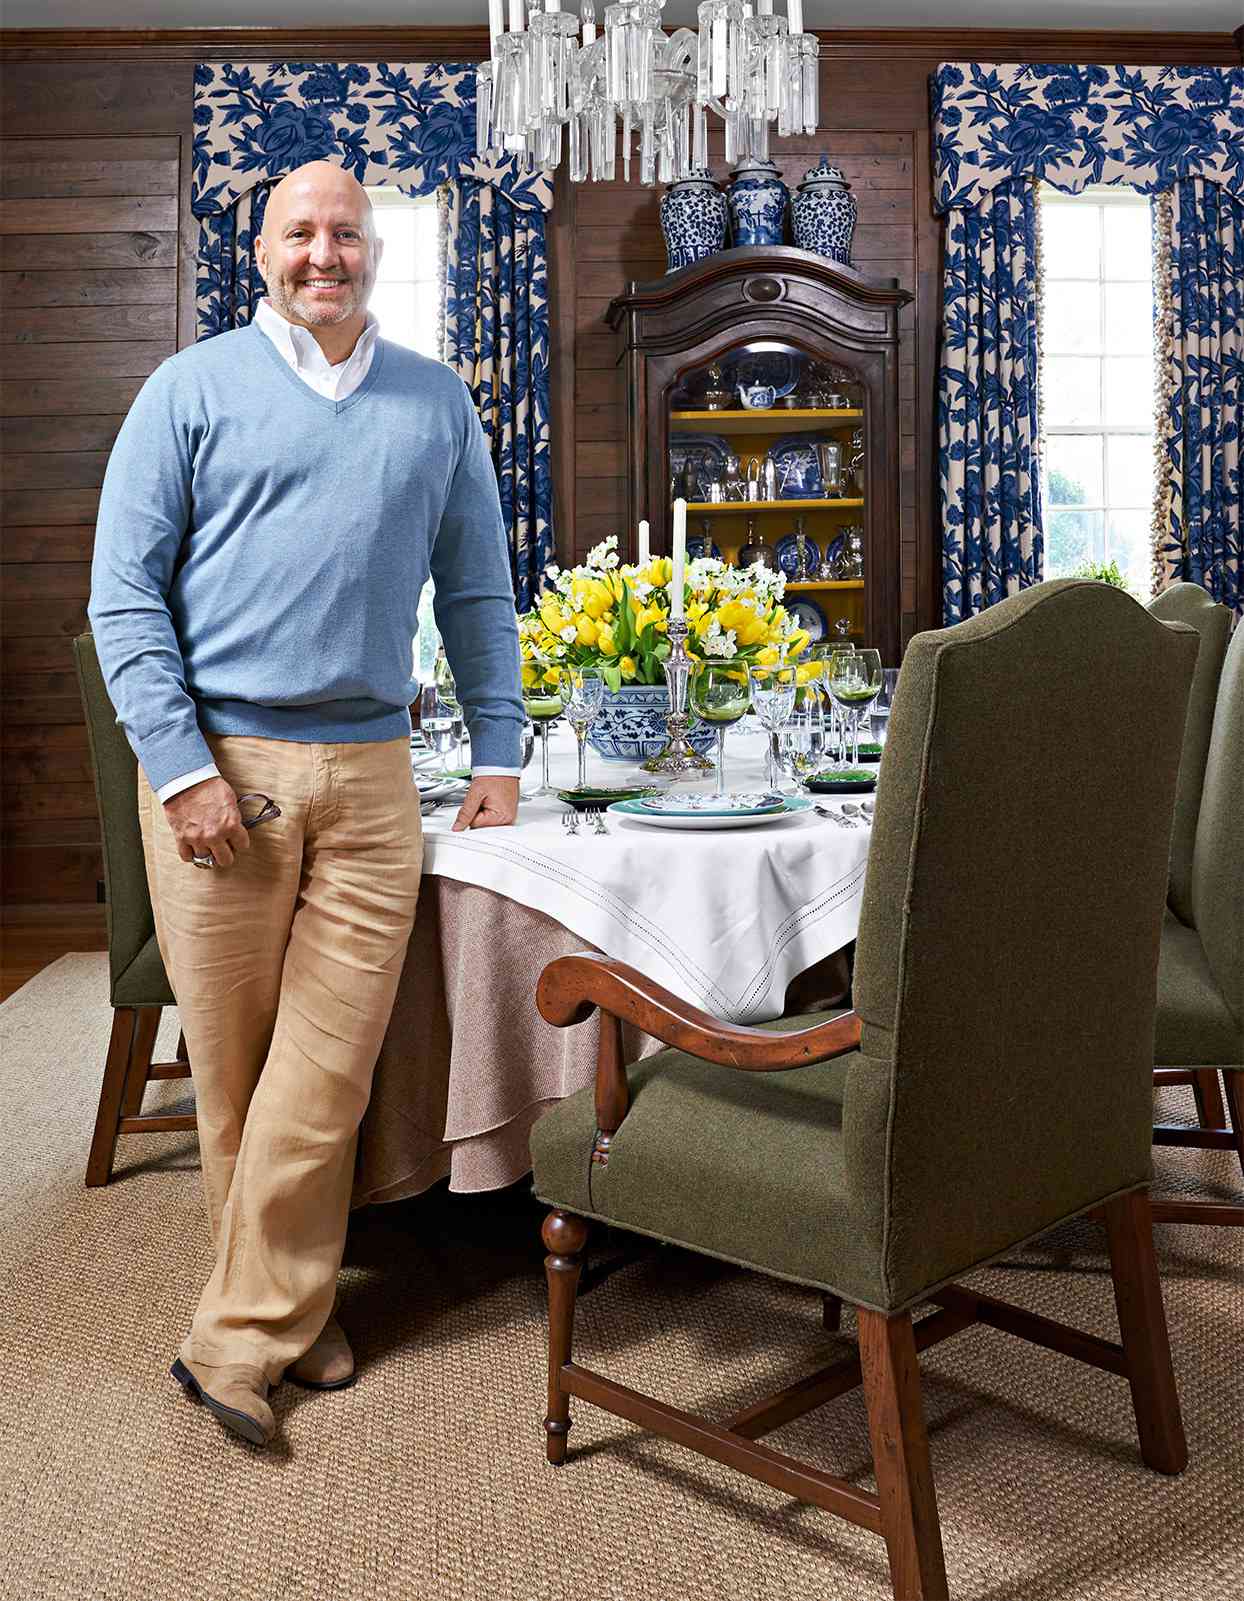 designer roger higgins dining room table blue curtains wood paneling